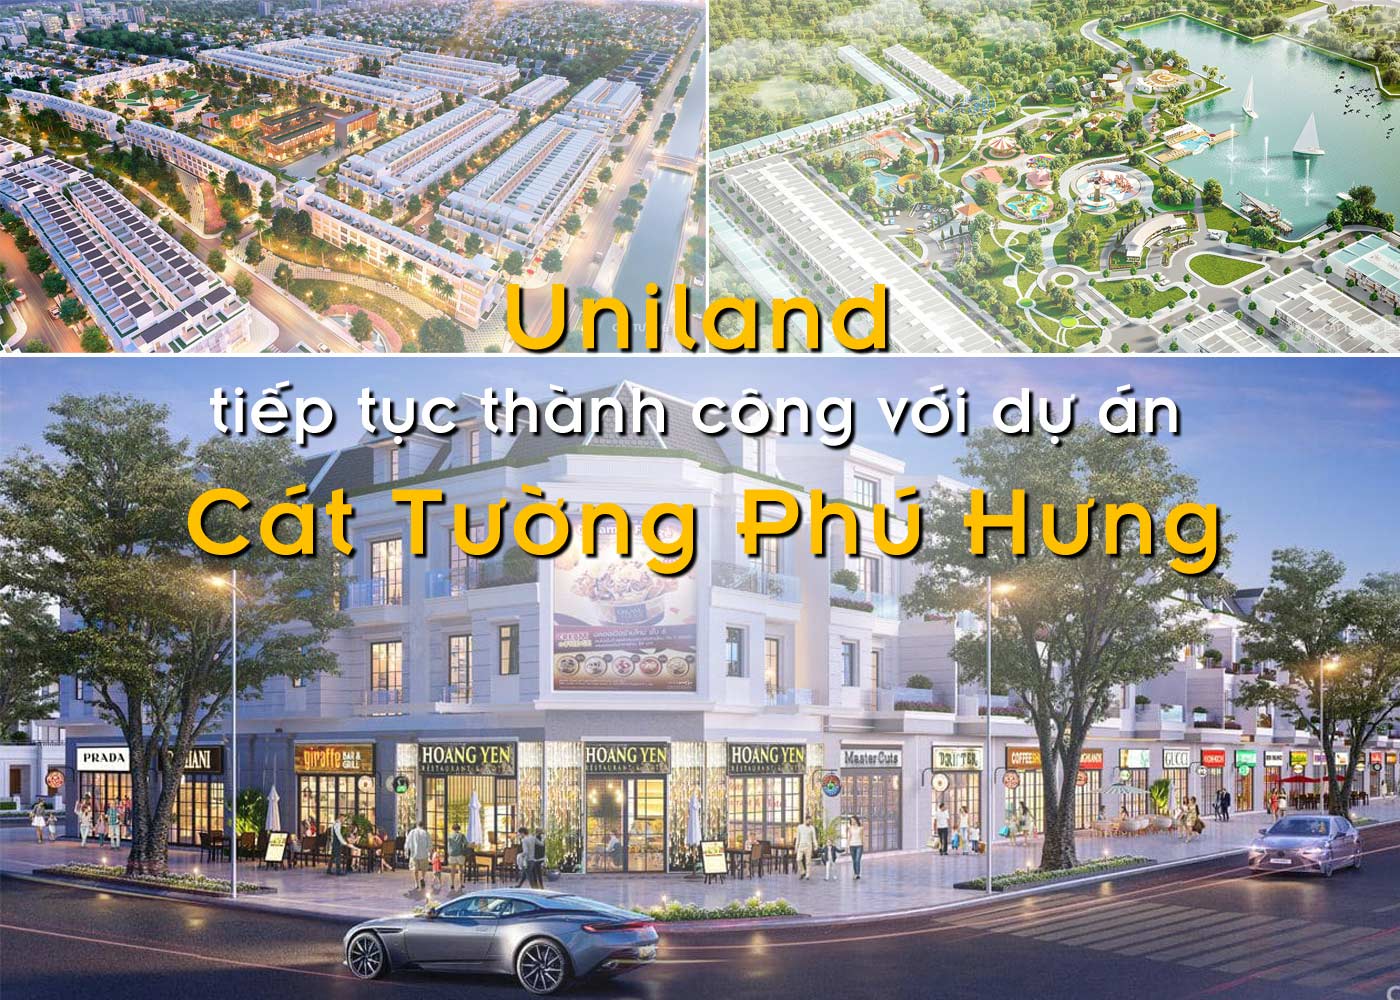 Uniland tiếp tục thành công với dự án Cát Tường Phú Hưng - Ảnh 1